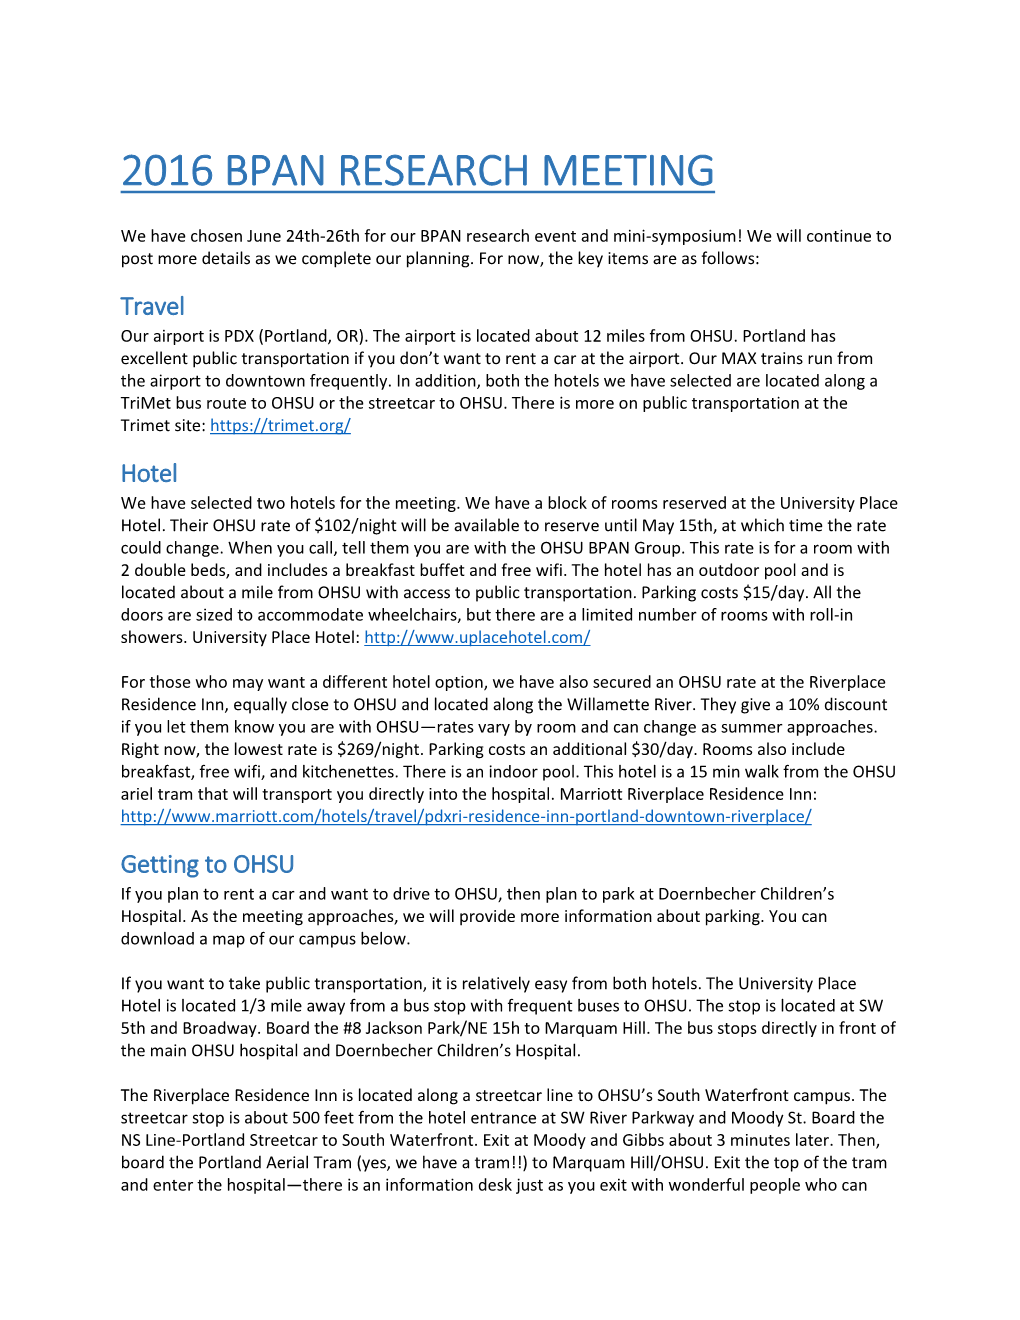 2016 Bpan Research Meeting